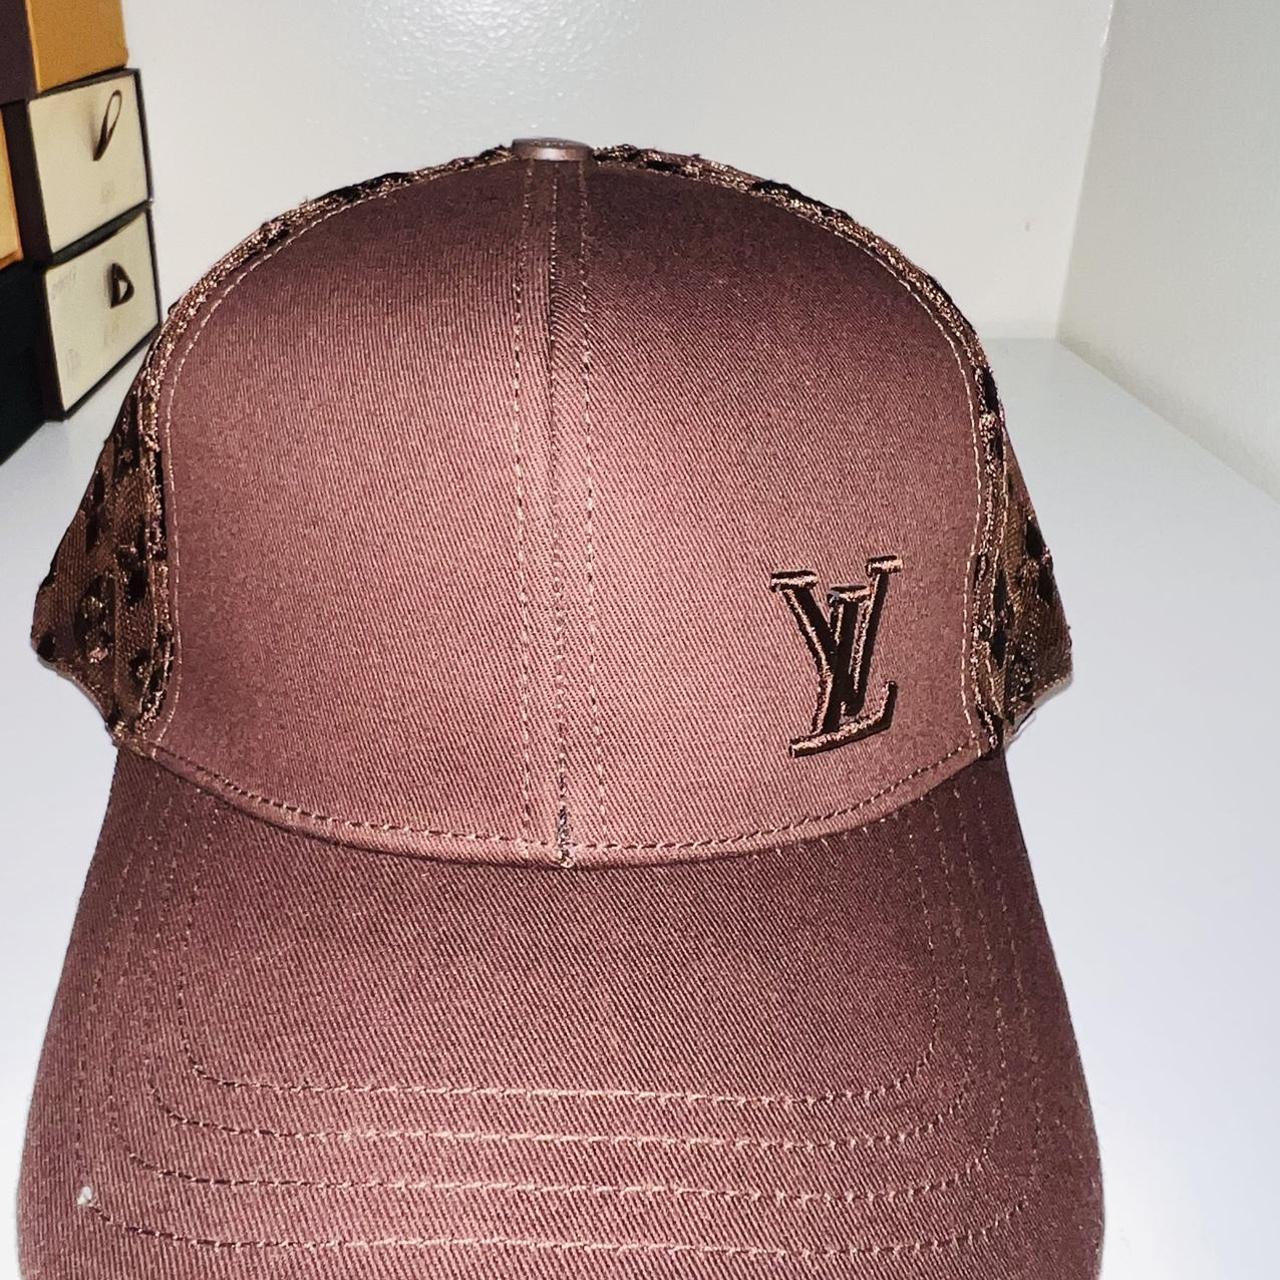 LV Louis Vuitton cap, really good condition. - Depop